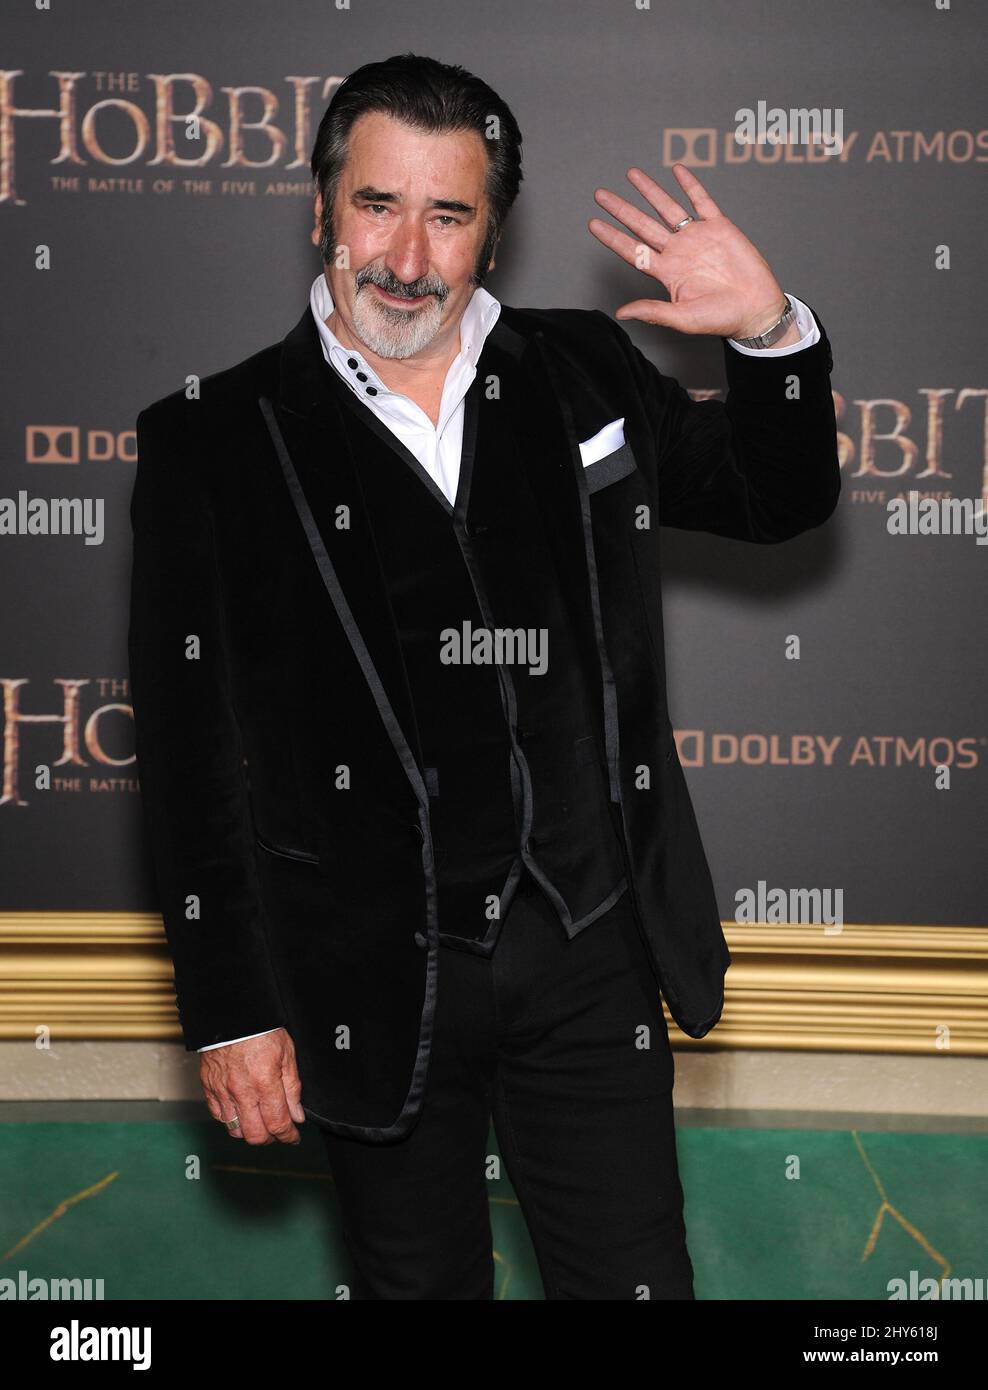 William Kircher participant à la première « The Hobbit: The Battle of the Five Armies », qui s'est tenue au Dolby Theatre de Los Angeles, aux États-Unis. Banque D'Images